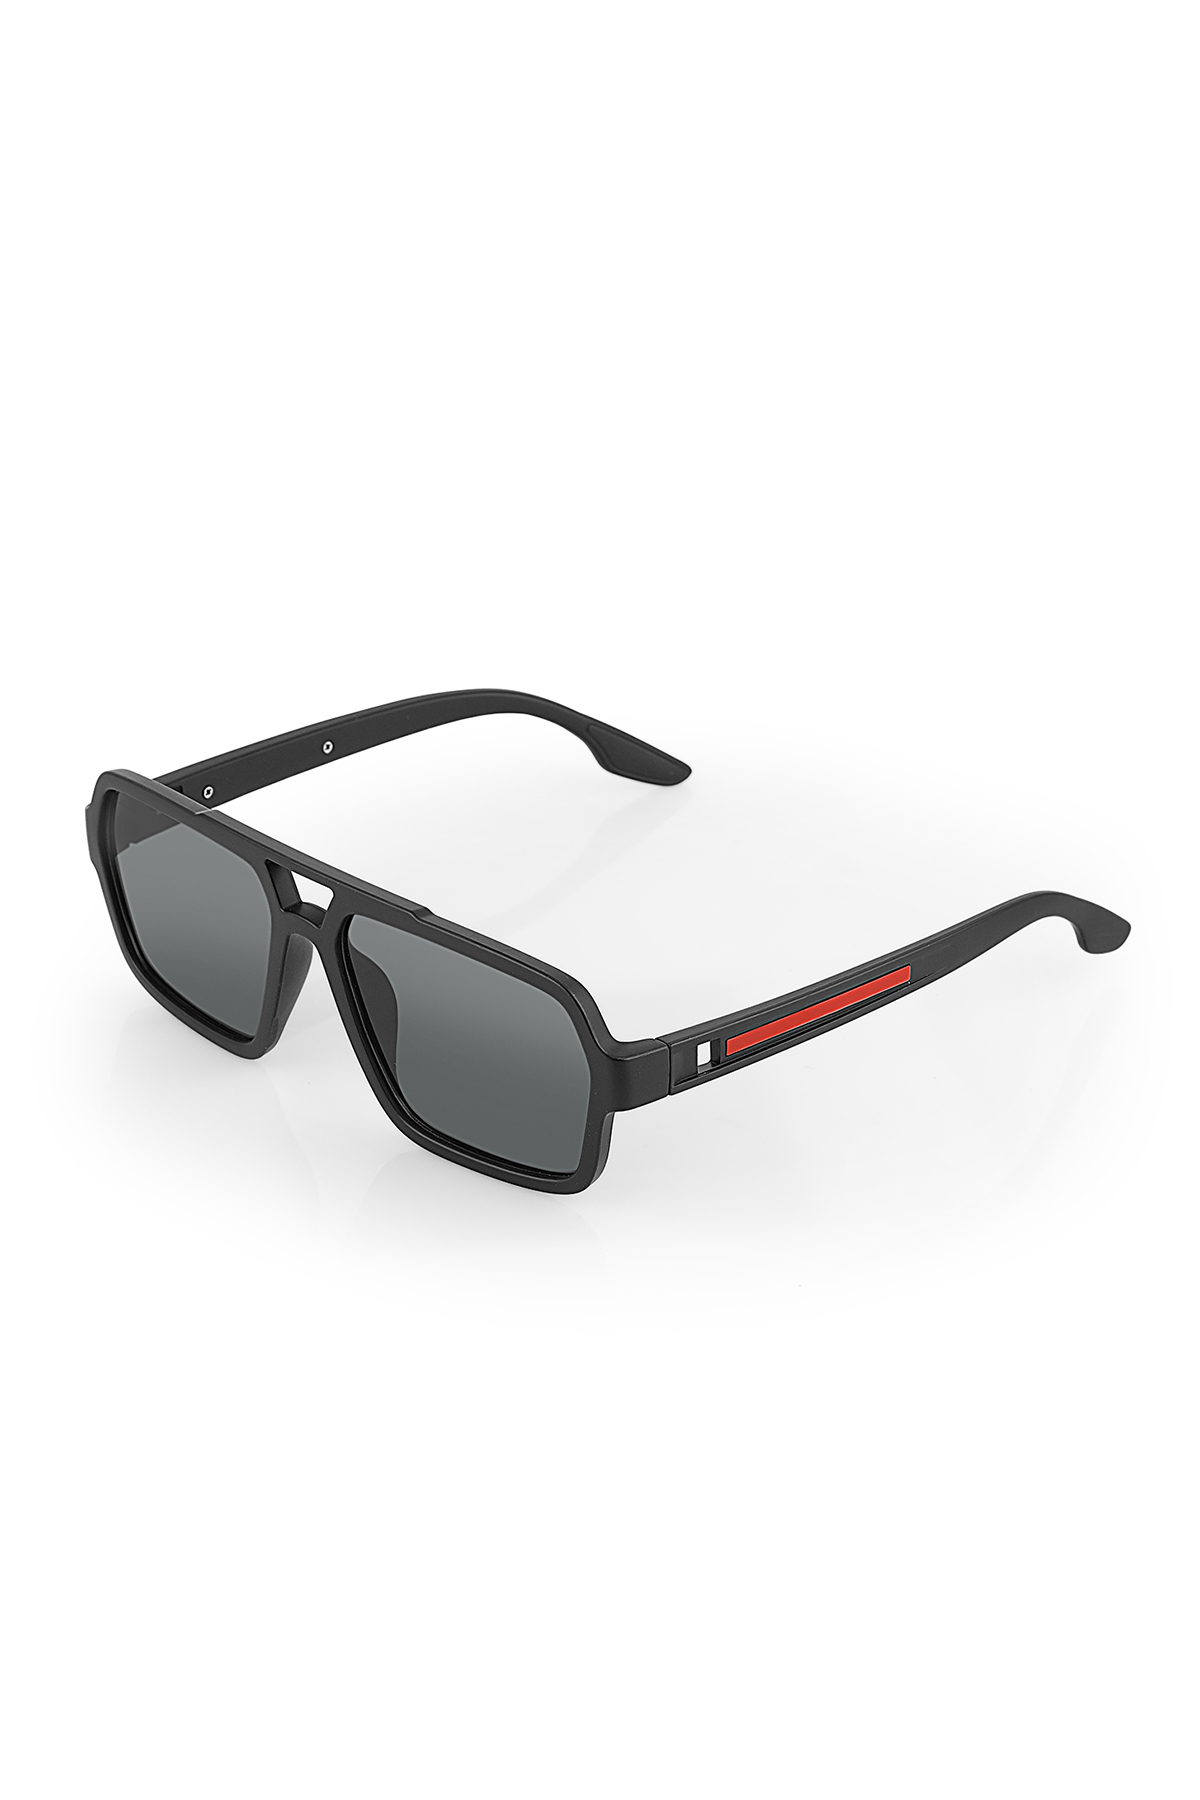 Polo Air UV400 Korumalı  Spor Erkek Güneş Gözlüğü Siyah PLG-2077C1